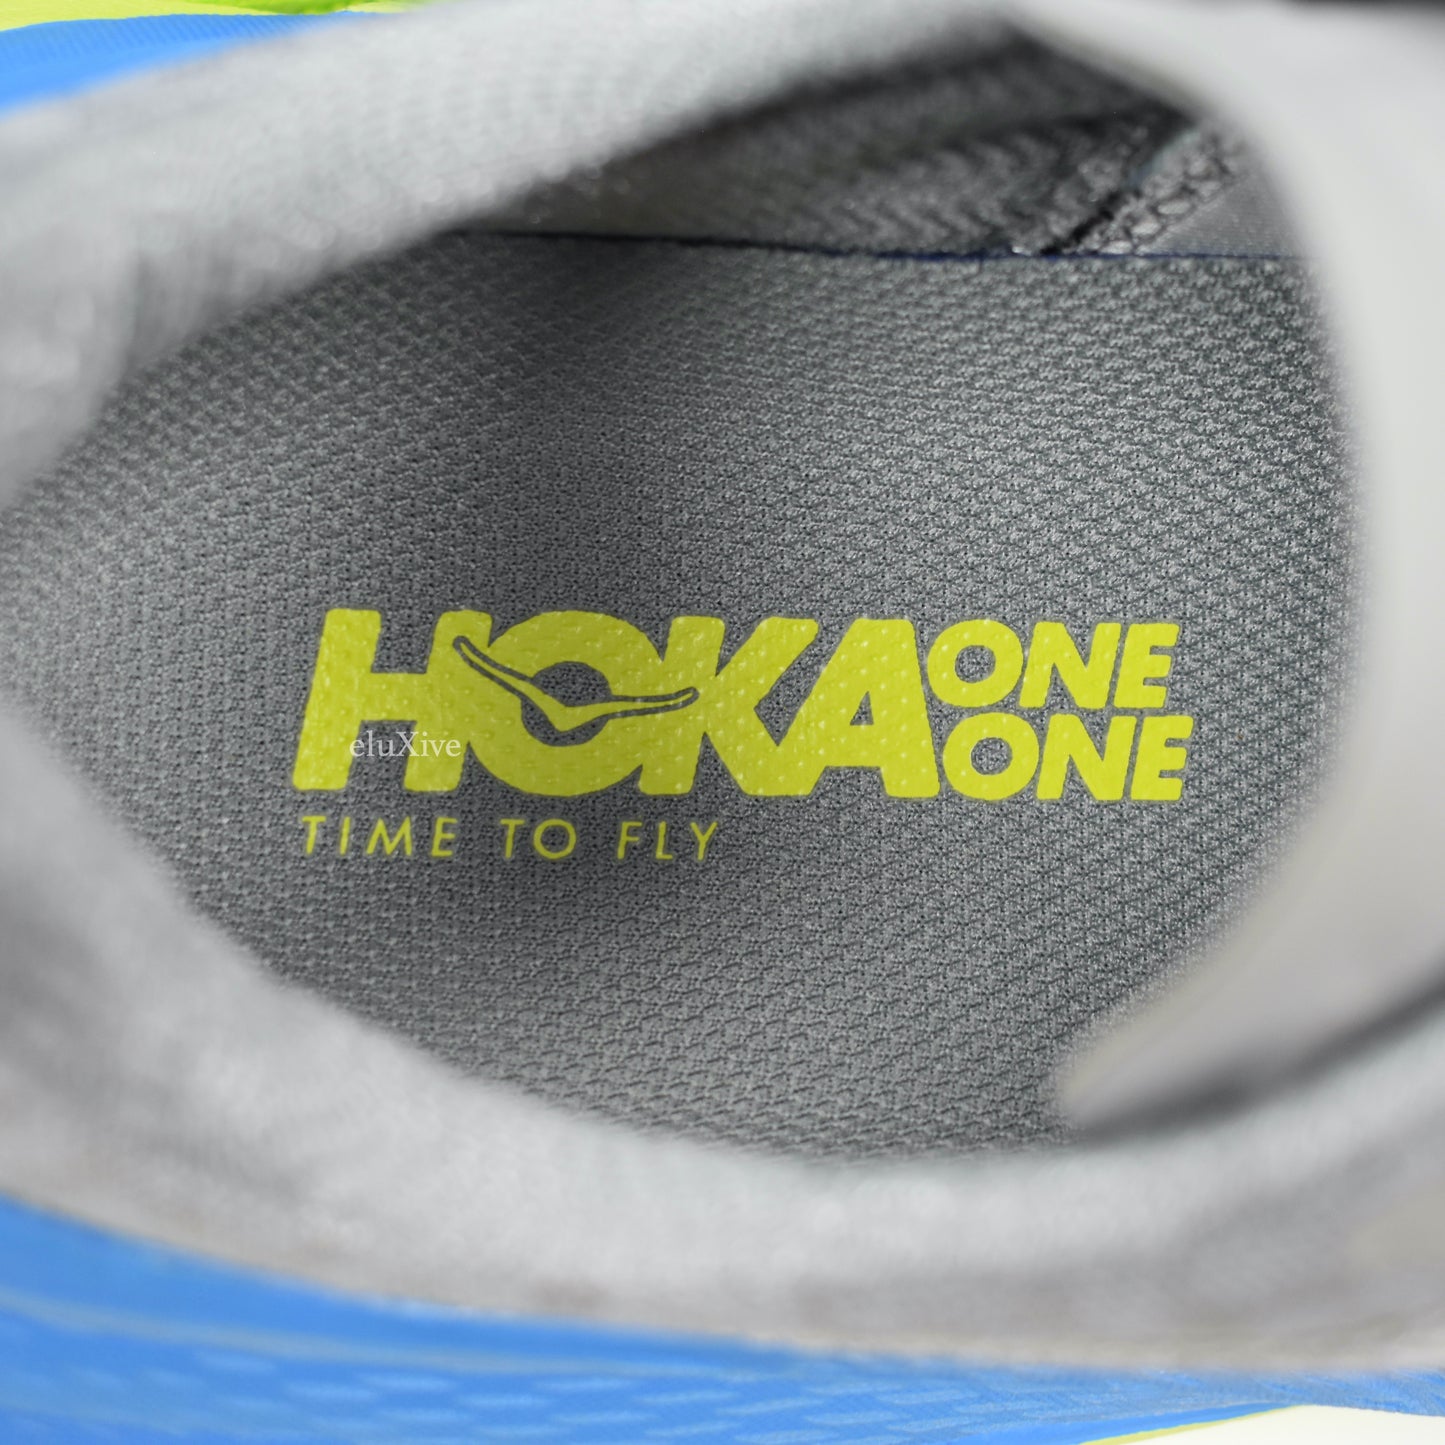 Hoka One One - Tennine Running Sneakers (Gray/Blue/Yellow)